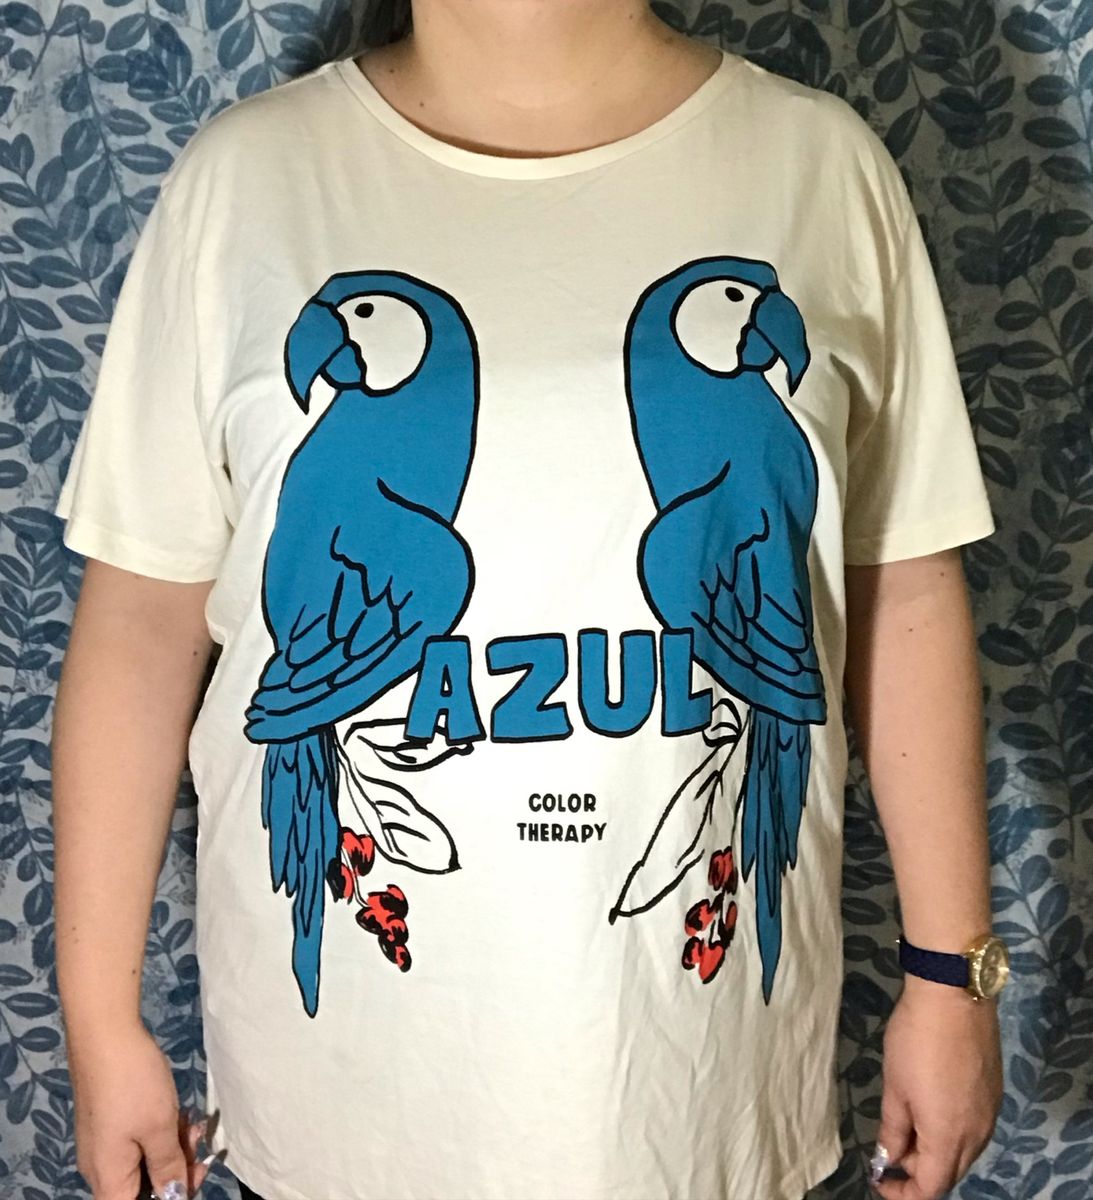 T-Shirt de Mulher PUNCH Oversized Cropped Moira Azul (XL)